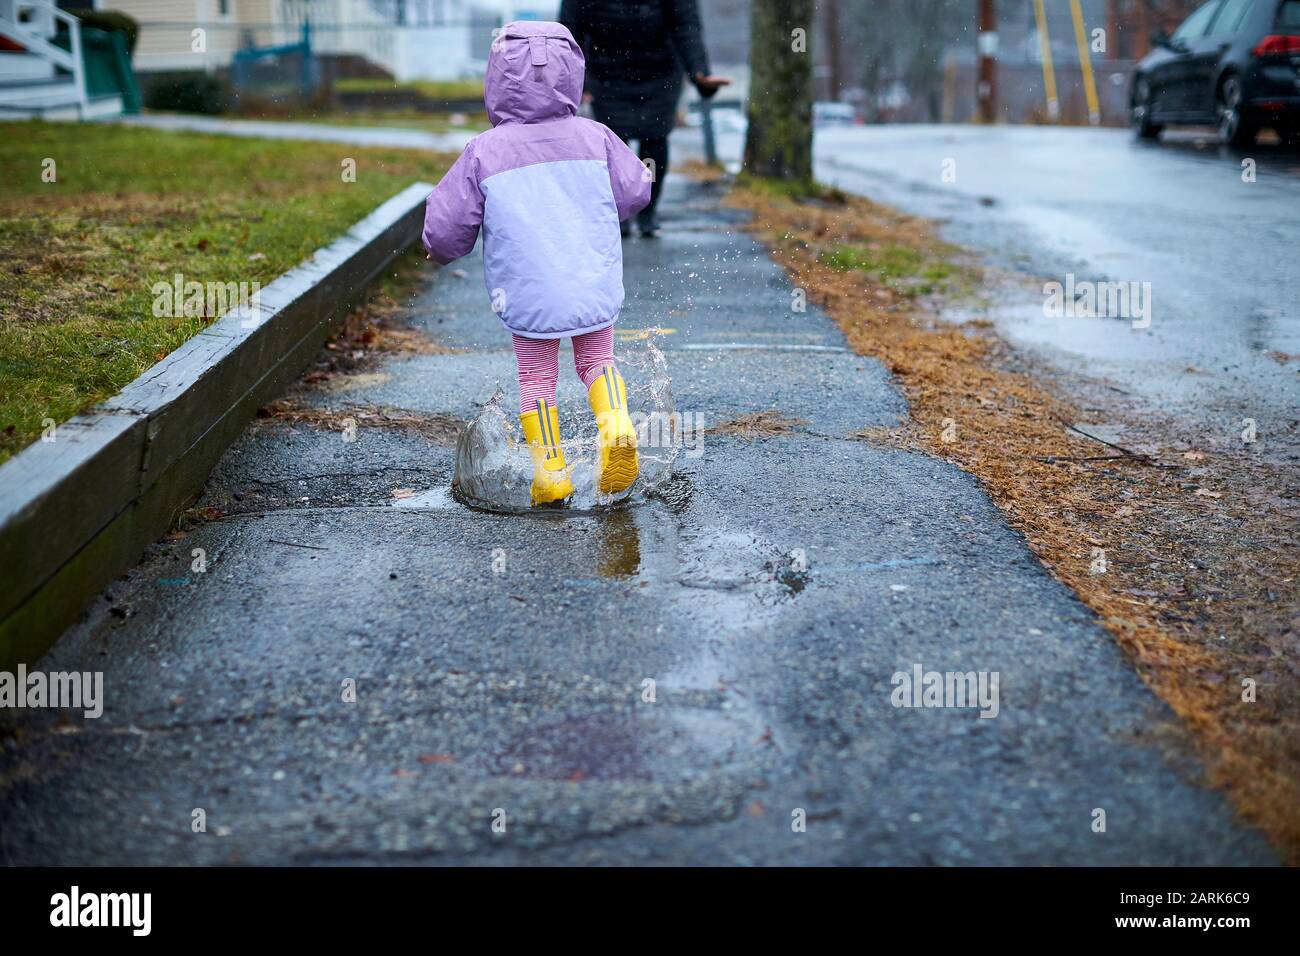 Ein kleines Mädchen, das Spaß hat, an einem regnerischen Tag in Pfützen zu planschen. Stockfoto